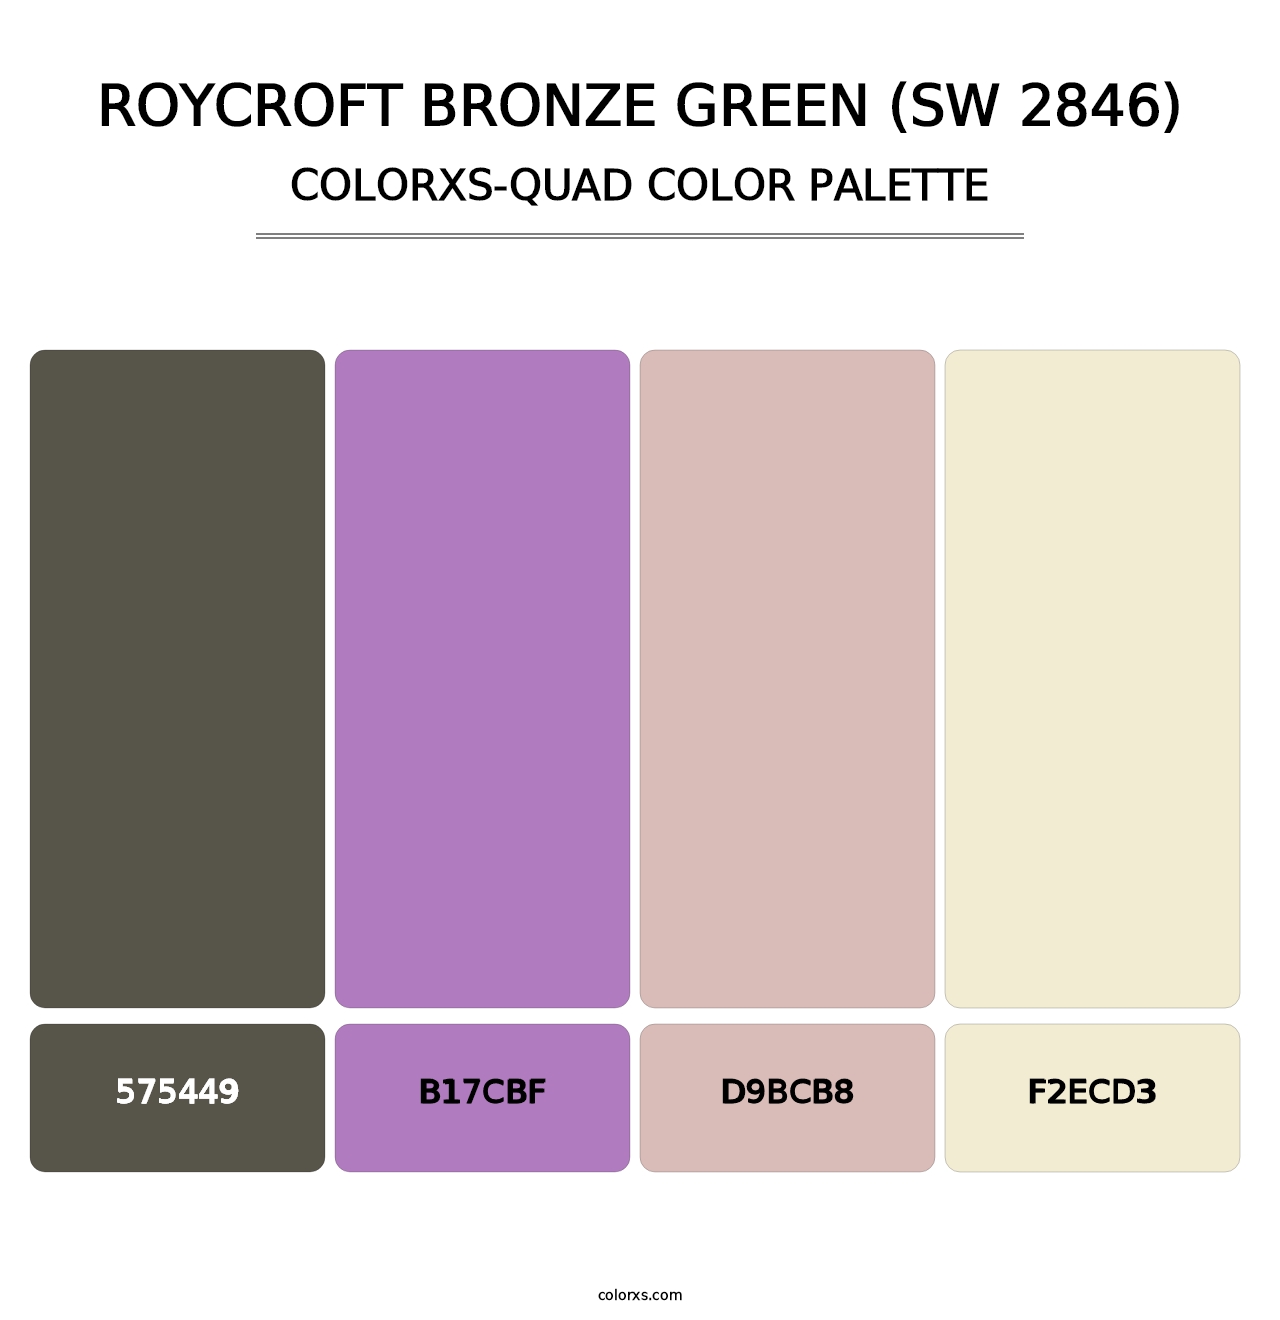 Roycroft Bronze Green (SW 2846) - Colorxs Quad Palette